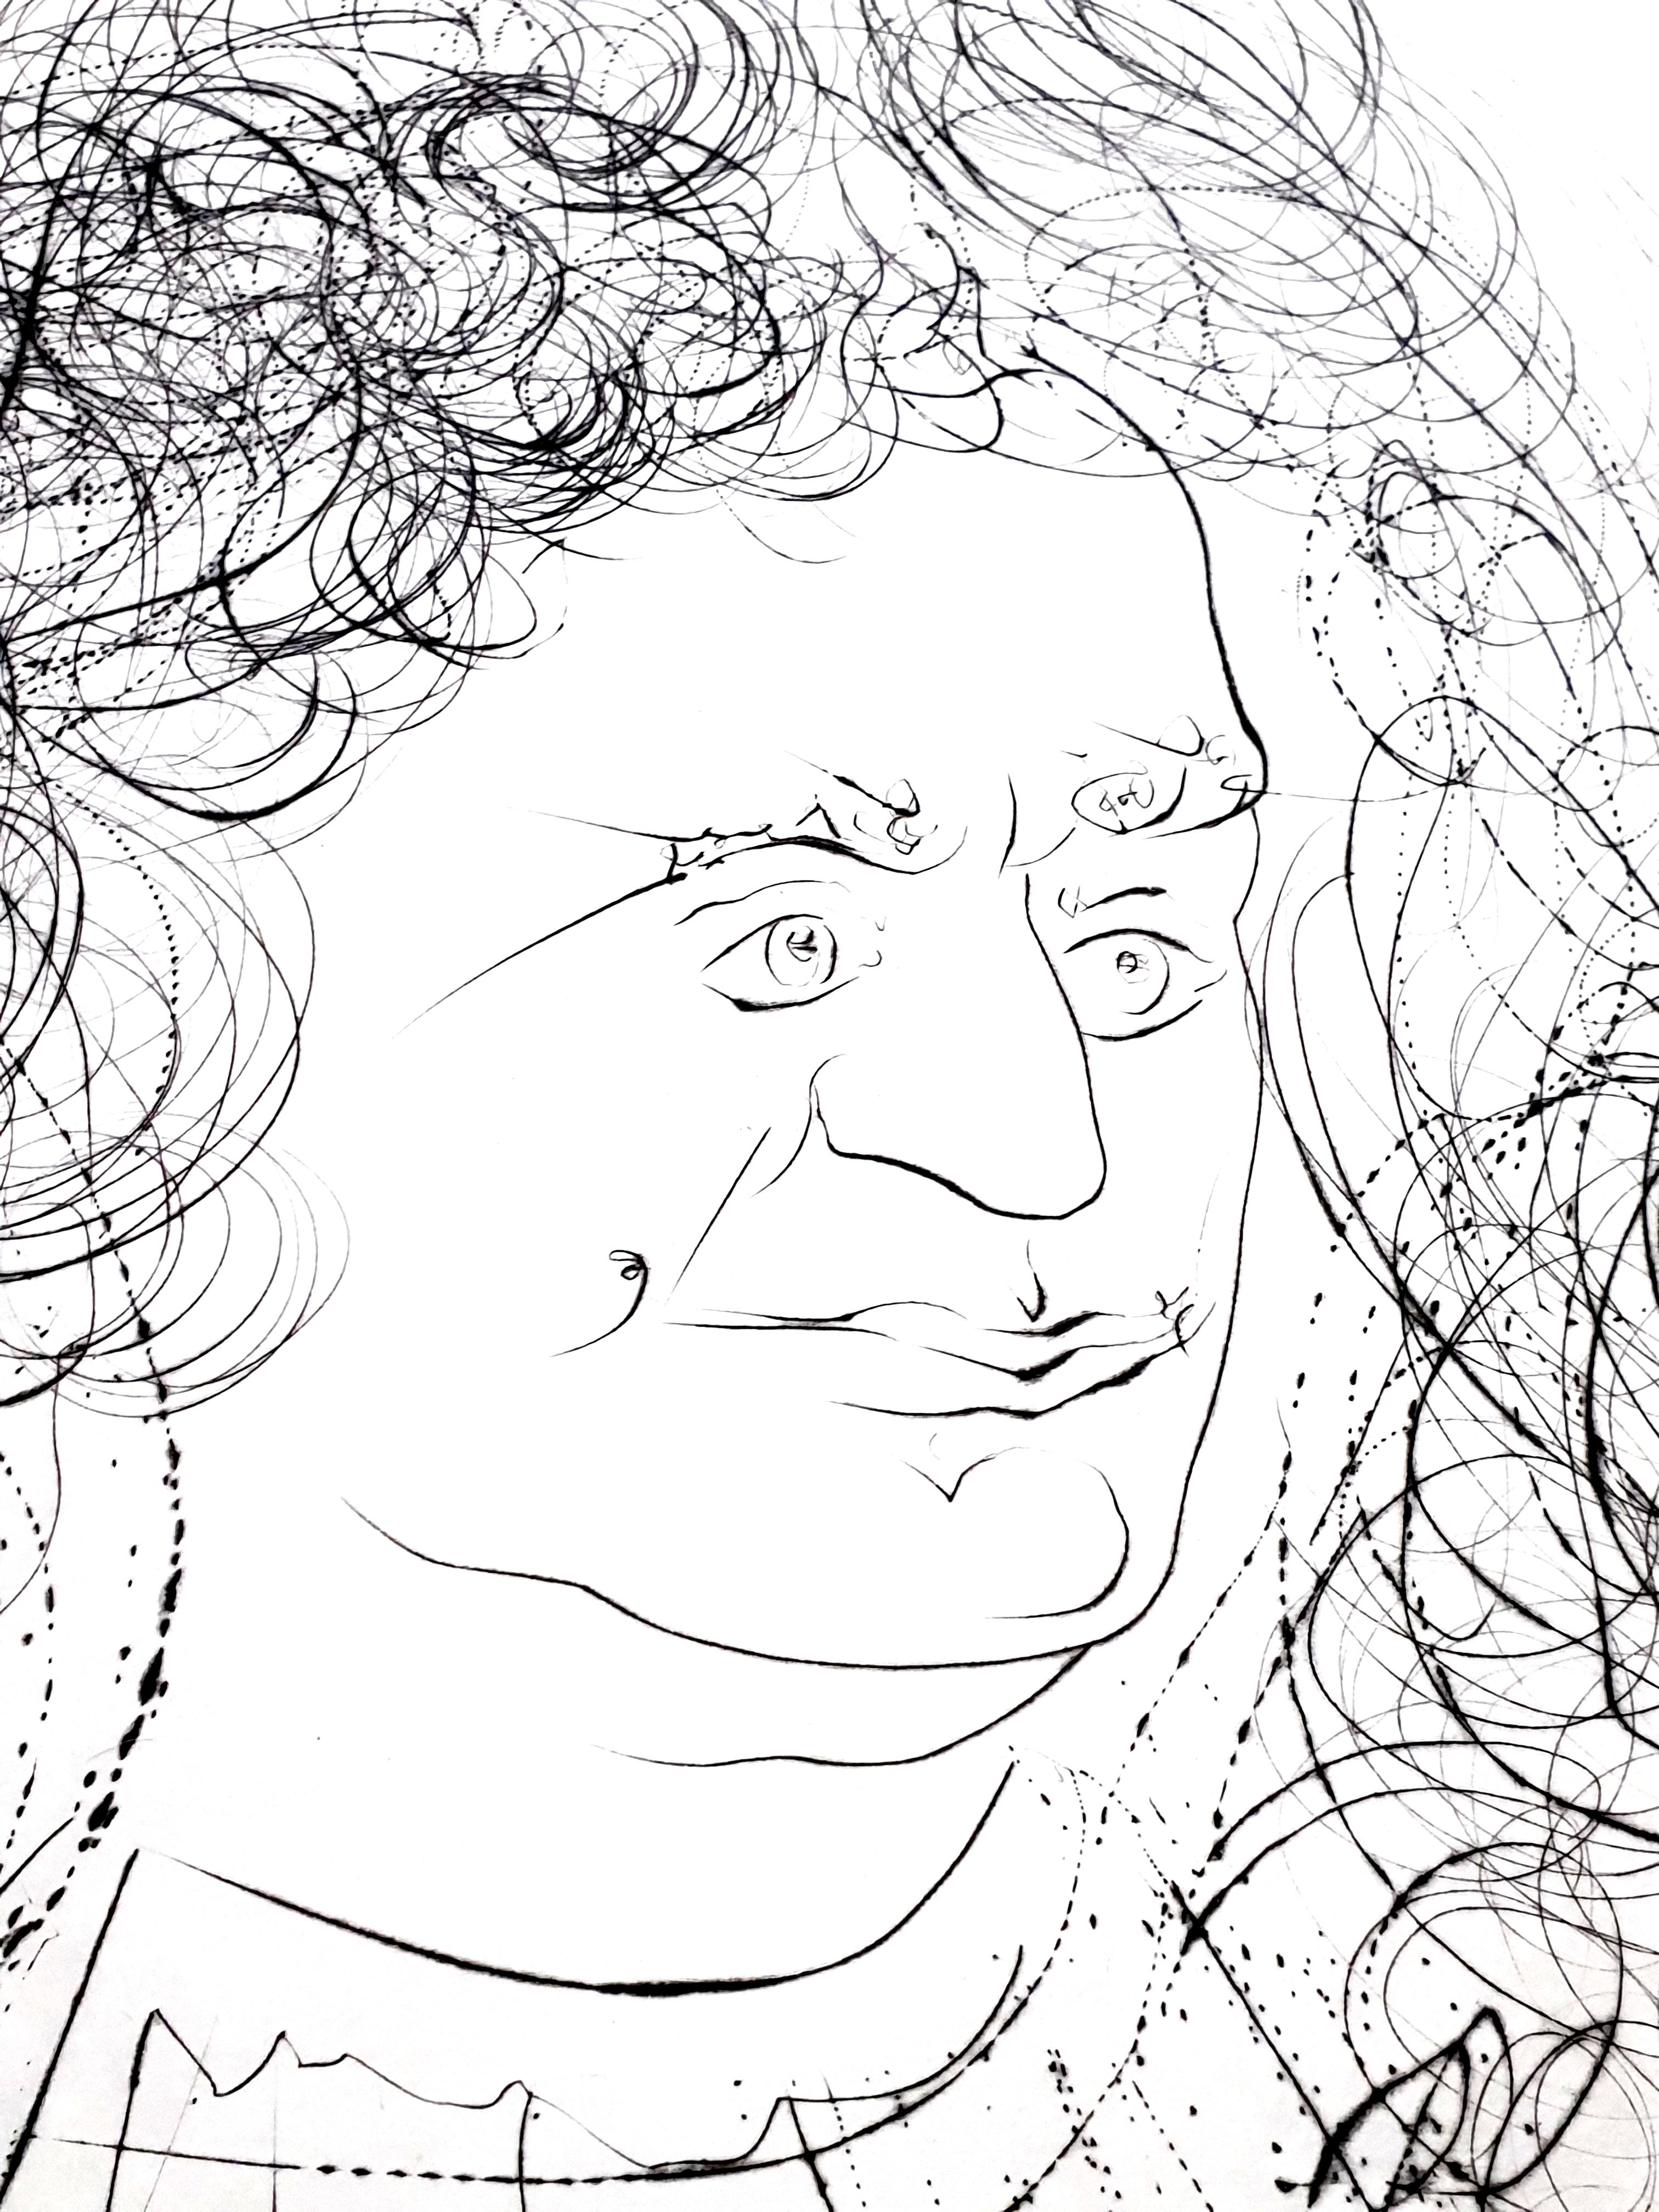 Salvador Dali - Portrait de La Fontaine - Gravure signée
1974
Signé à la main par Dali
Edition : /250
Les dimensions de l'image sont de 22,8 x 15,7 pouces sur un papier de 31 x 23,2 pouces
Référence : 74-1  dans 